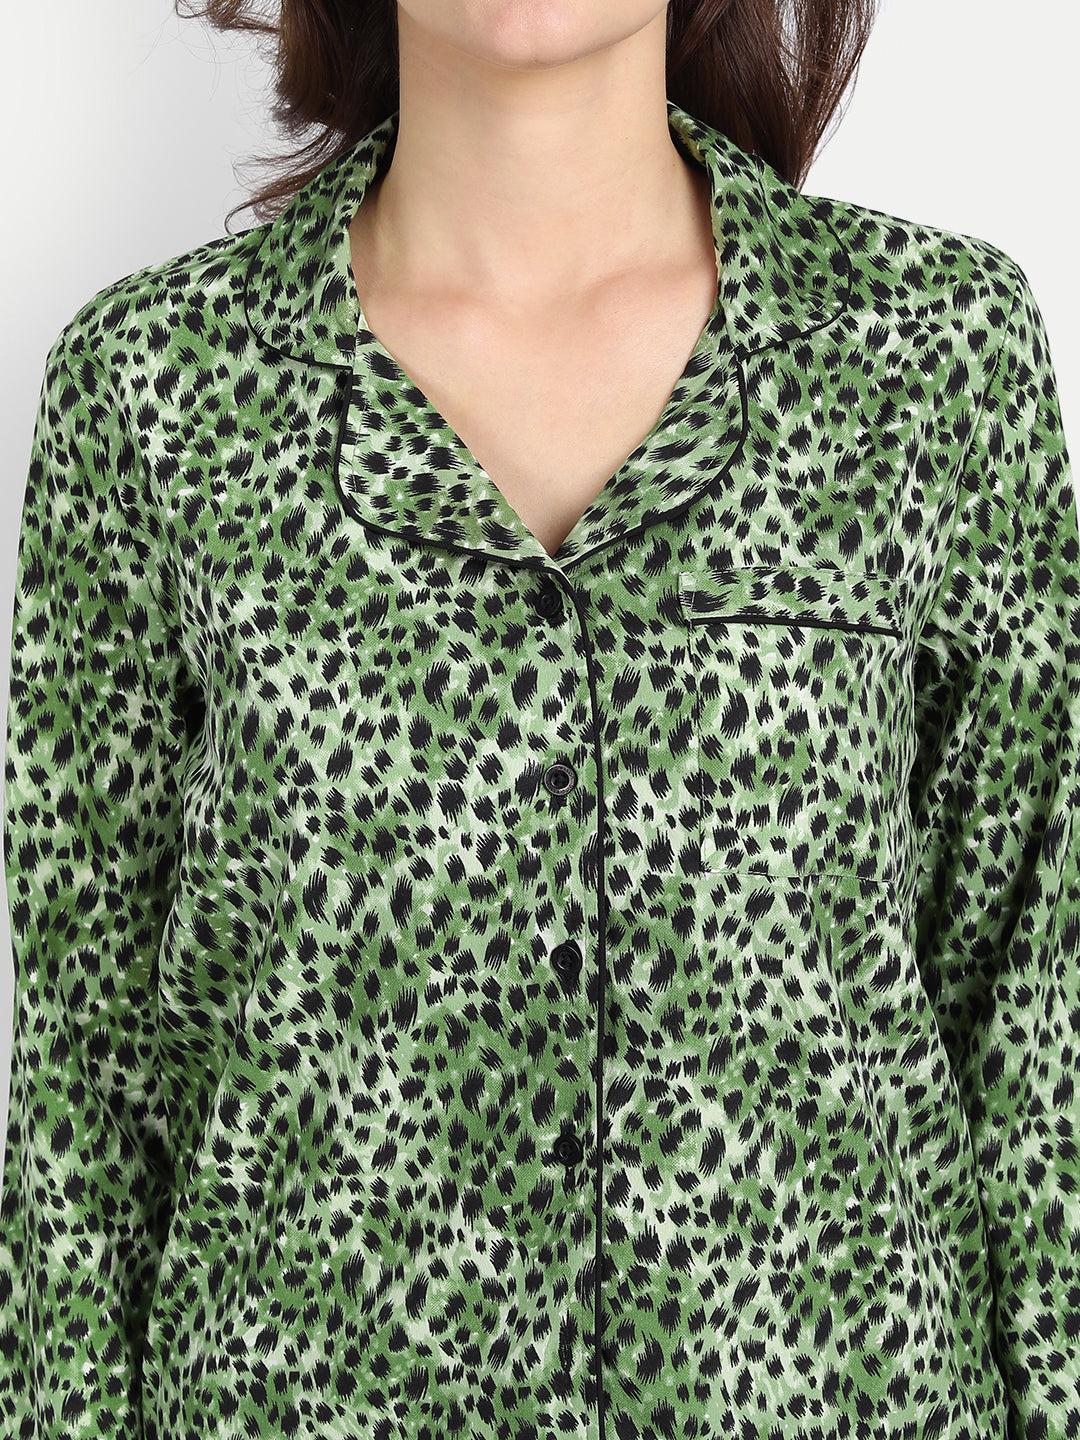 Women Black & Green Animal Print Polyester Pyjama & Shirt Nightsuit Set